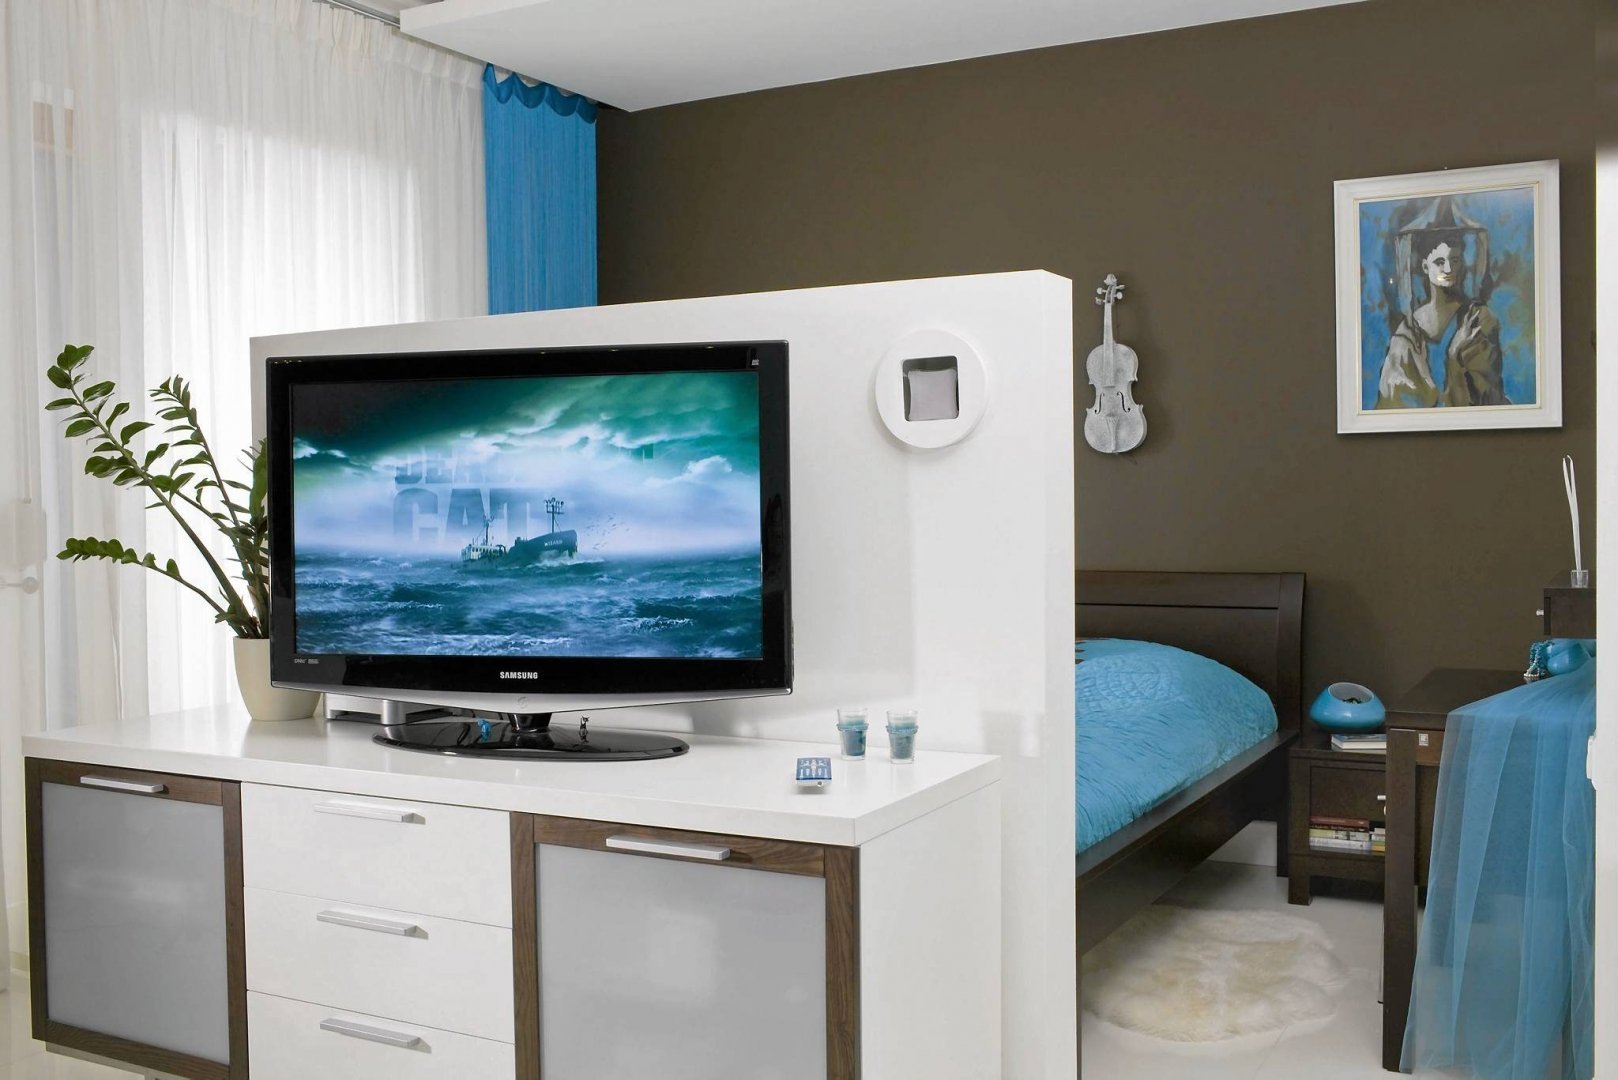 Зонирование телевизором. Телевизор в спальне. Телевизор в центре комнаты. Спальня с перегородкой для телевизора. Телевизор на тумбе посреди комнаты.